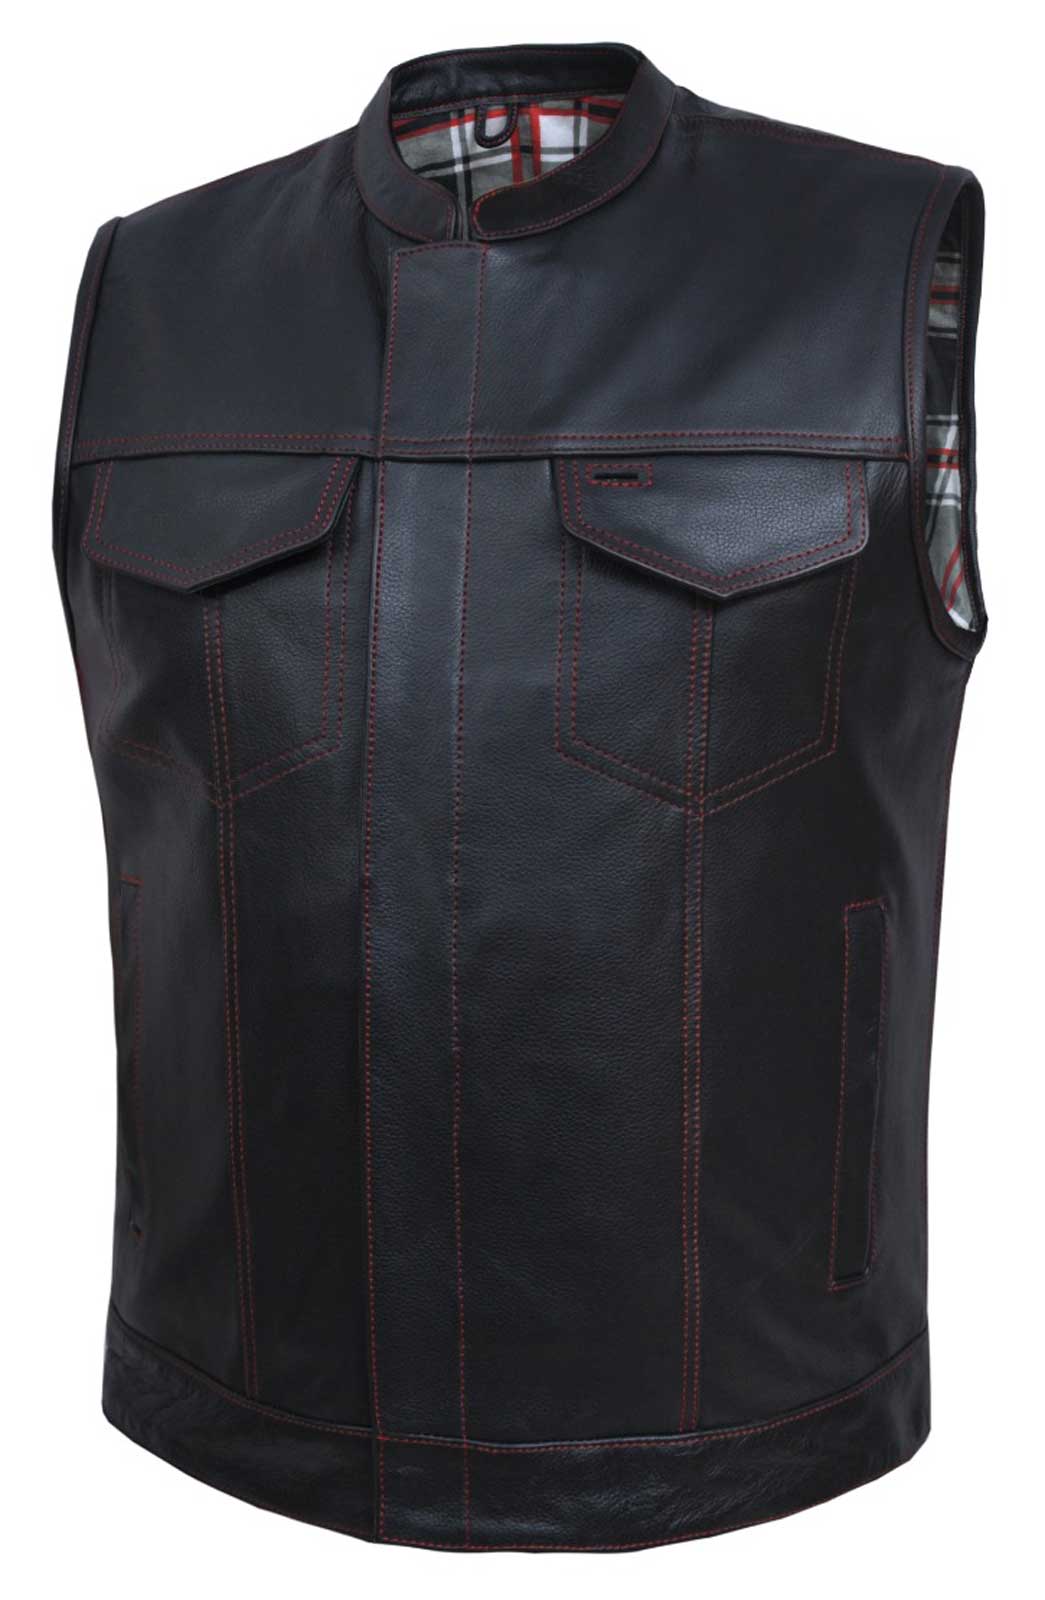 Vintage Unik Apparel Leather American Legion/Vietnam Biker Vest Patches  Size 56